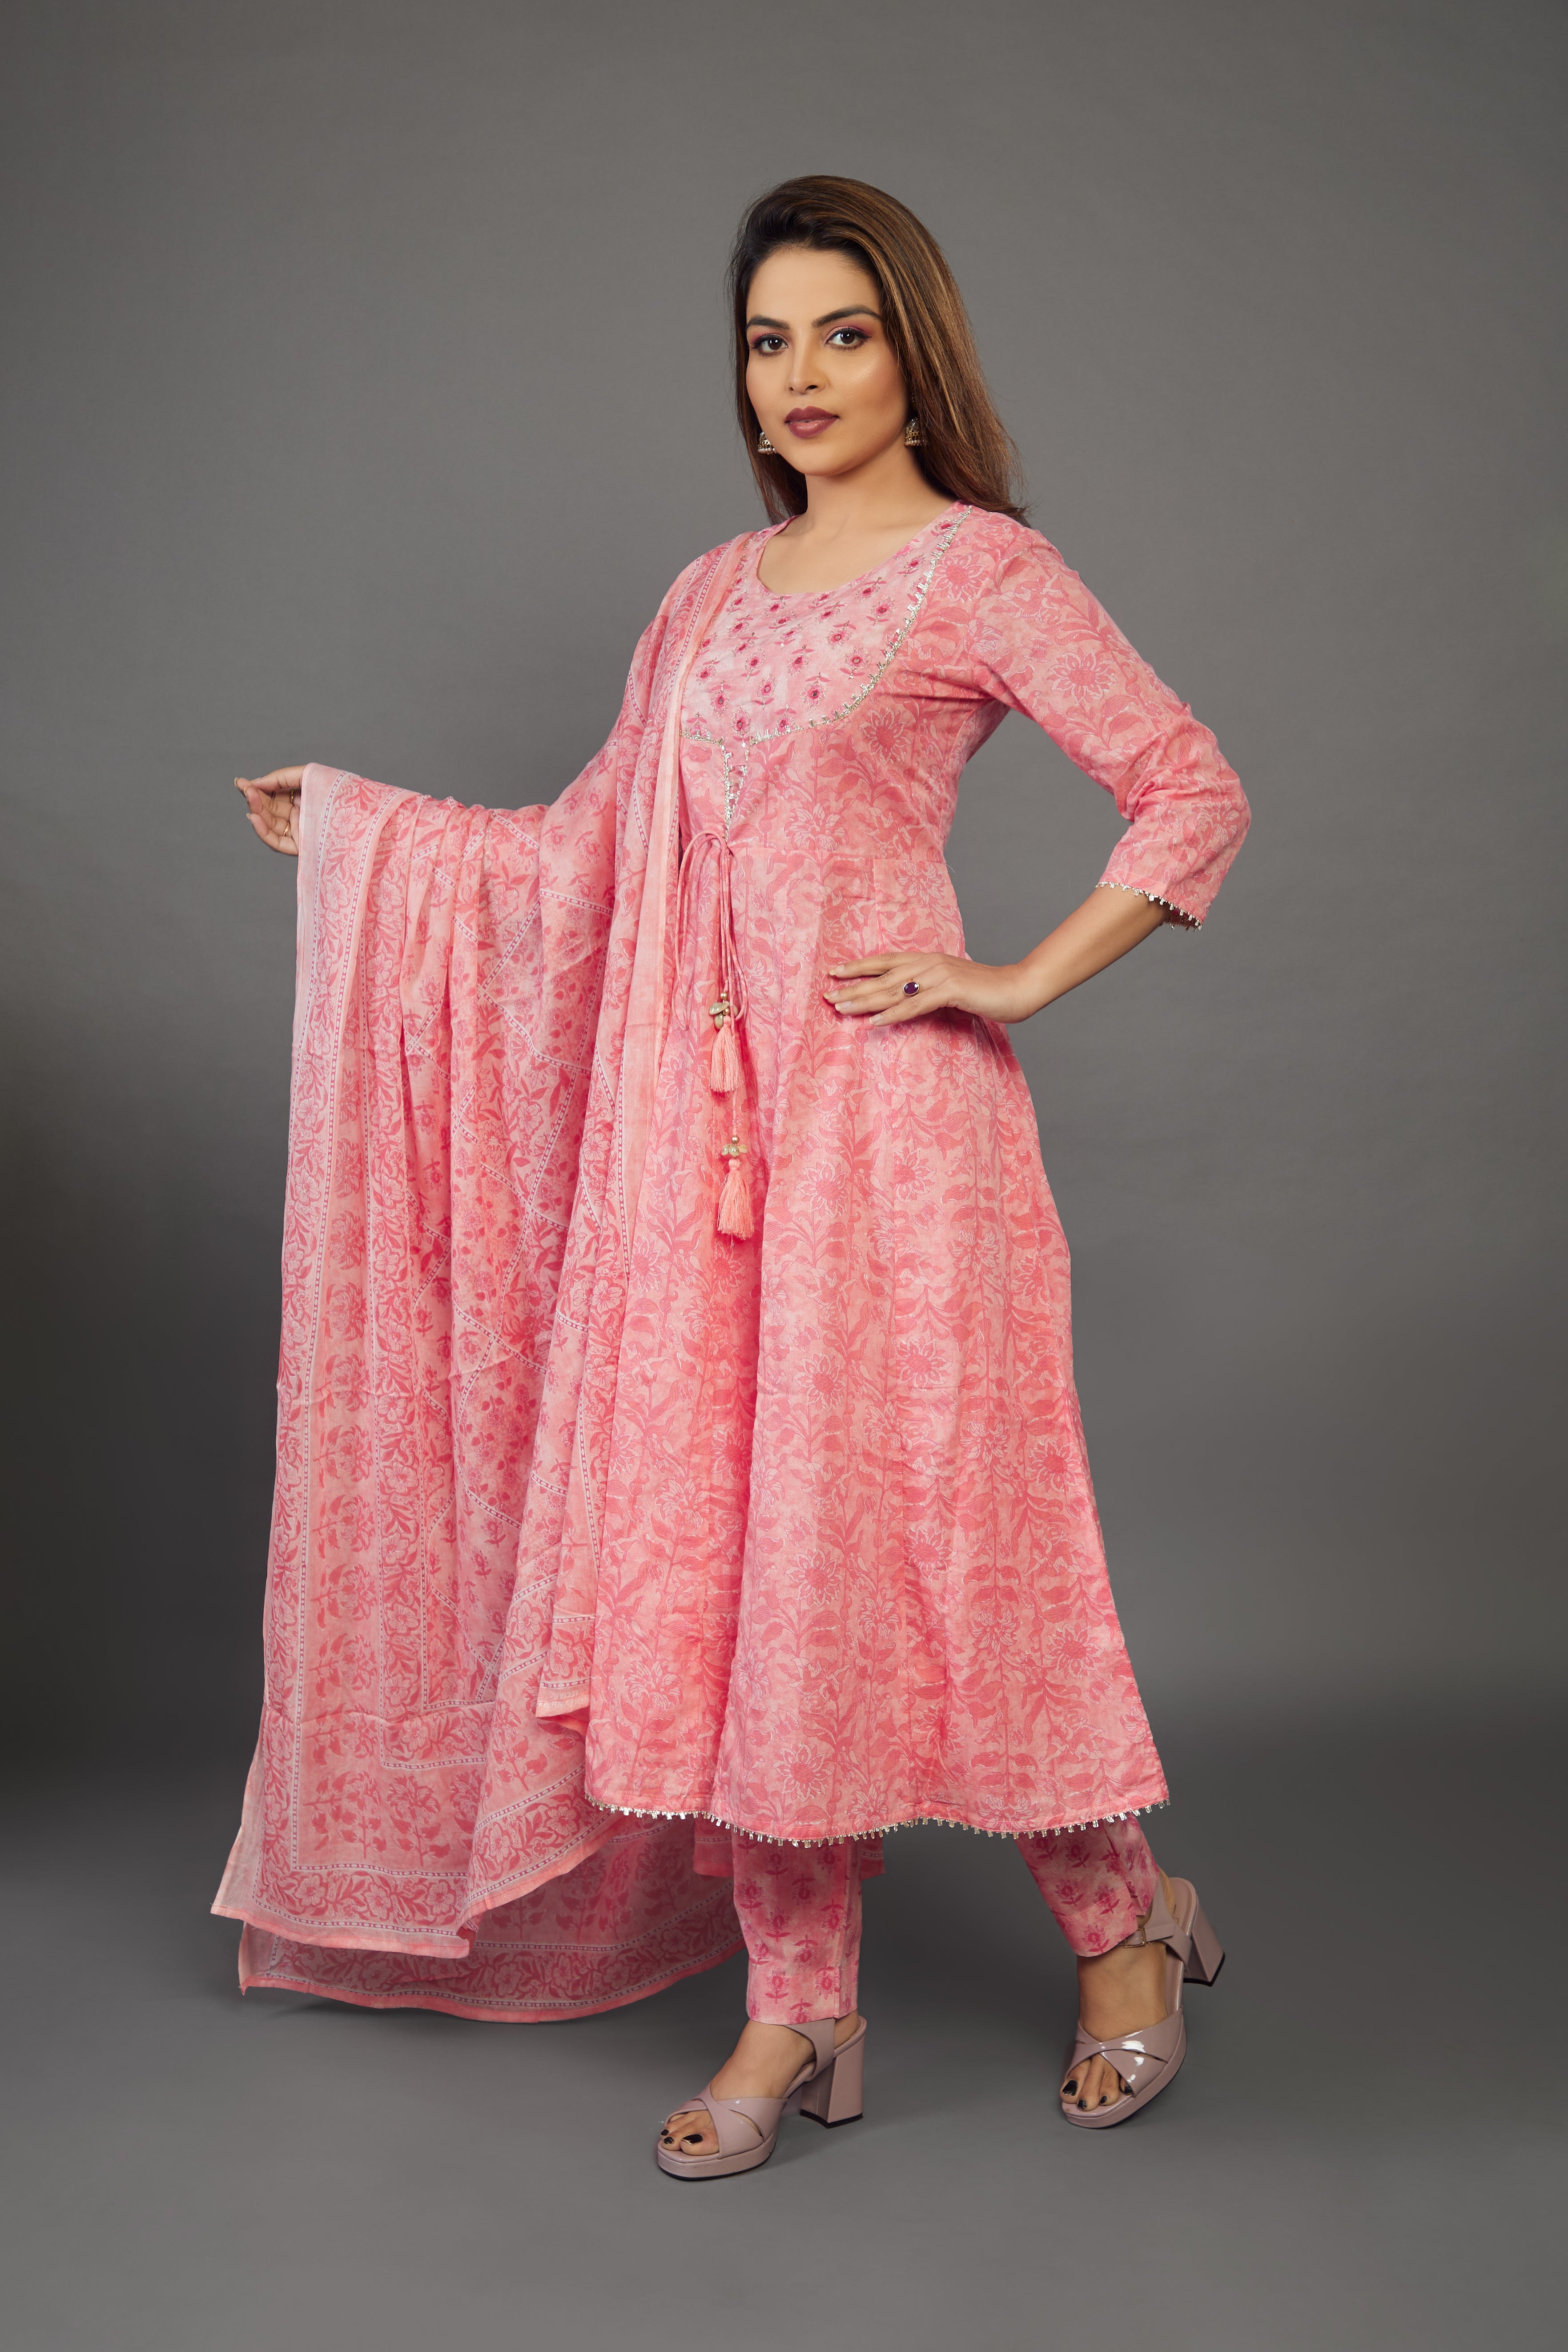 Buy Print Work Punjabi Suit | Churidar Salwar Suits